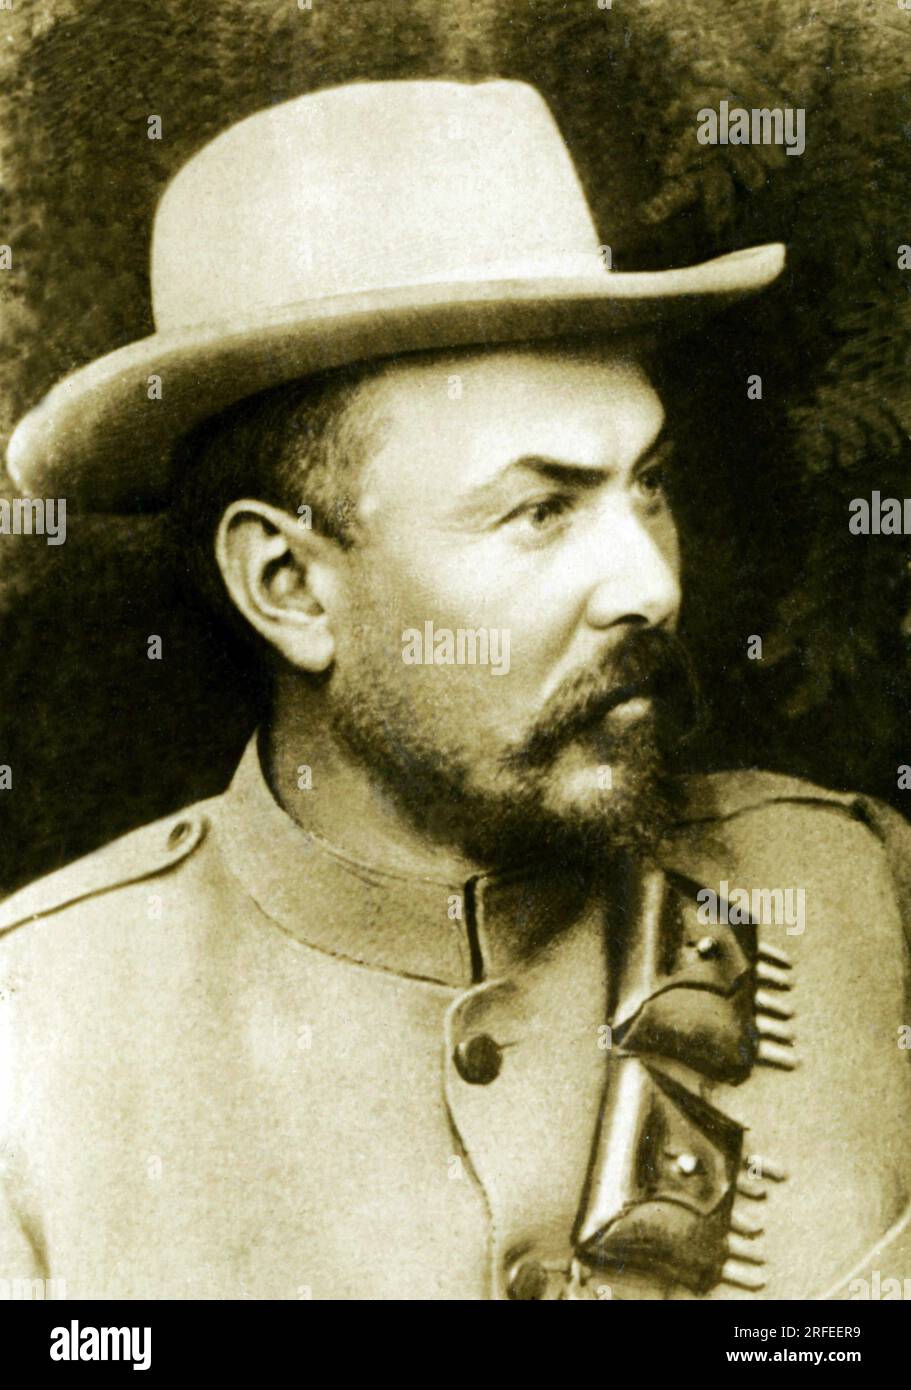 Portrait de Louis Botha (1862-1919), General Boer (d'Afrique du Sud), Homme politique Afrikaner, il fut un des fondateurs de l'Afrique du Sud en 1904. Stockfoto